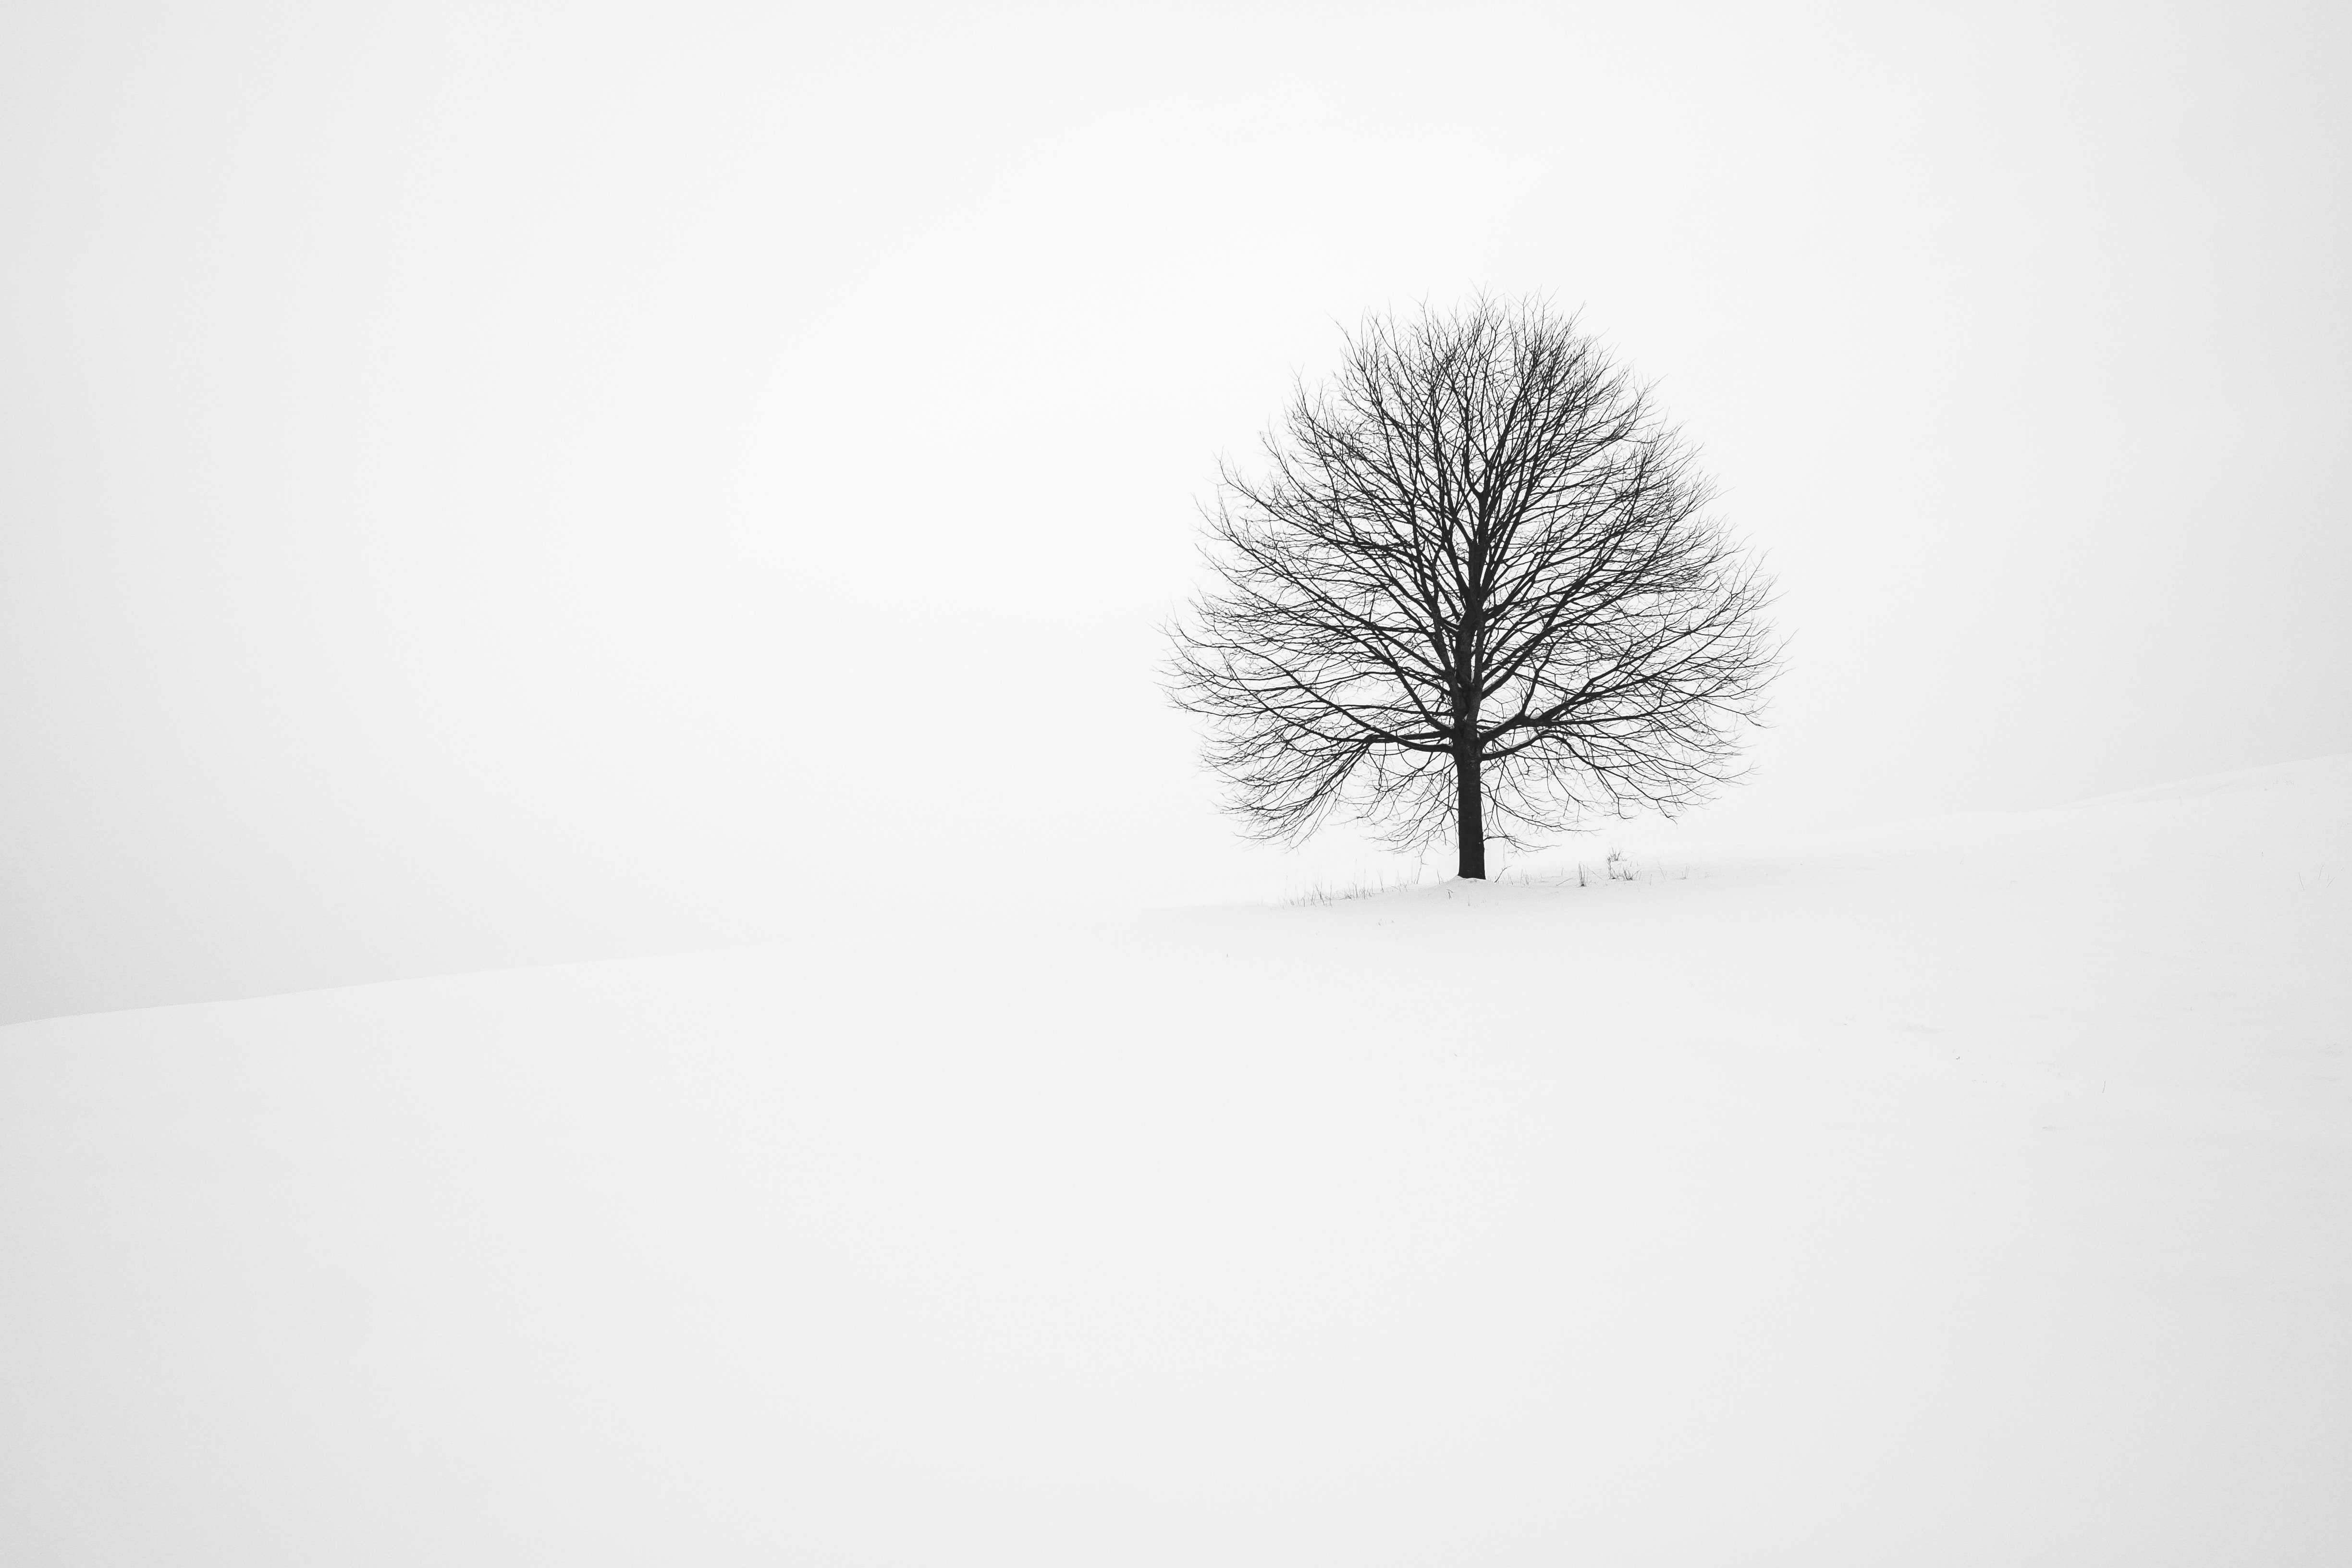 minimalism, winter, snow, wood, tree, bw, chb